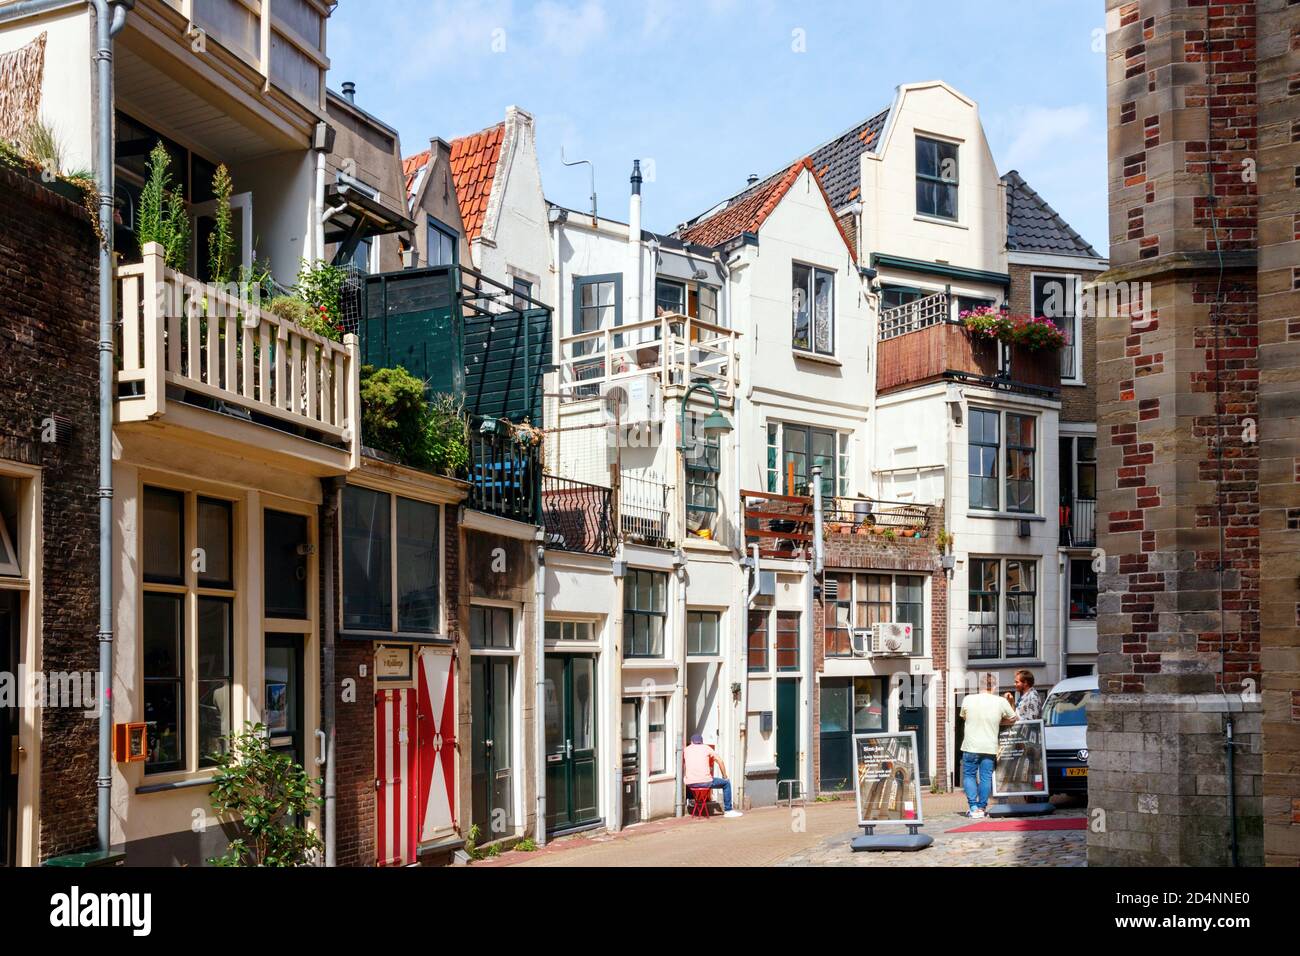 Vista sul centro di Gouda. Il retro di vecchie case tipiche olandesi della via Achter de Kerk (dietro la chiesa). Olanda meridionale, Paesi Bassi. Foto Stock